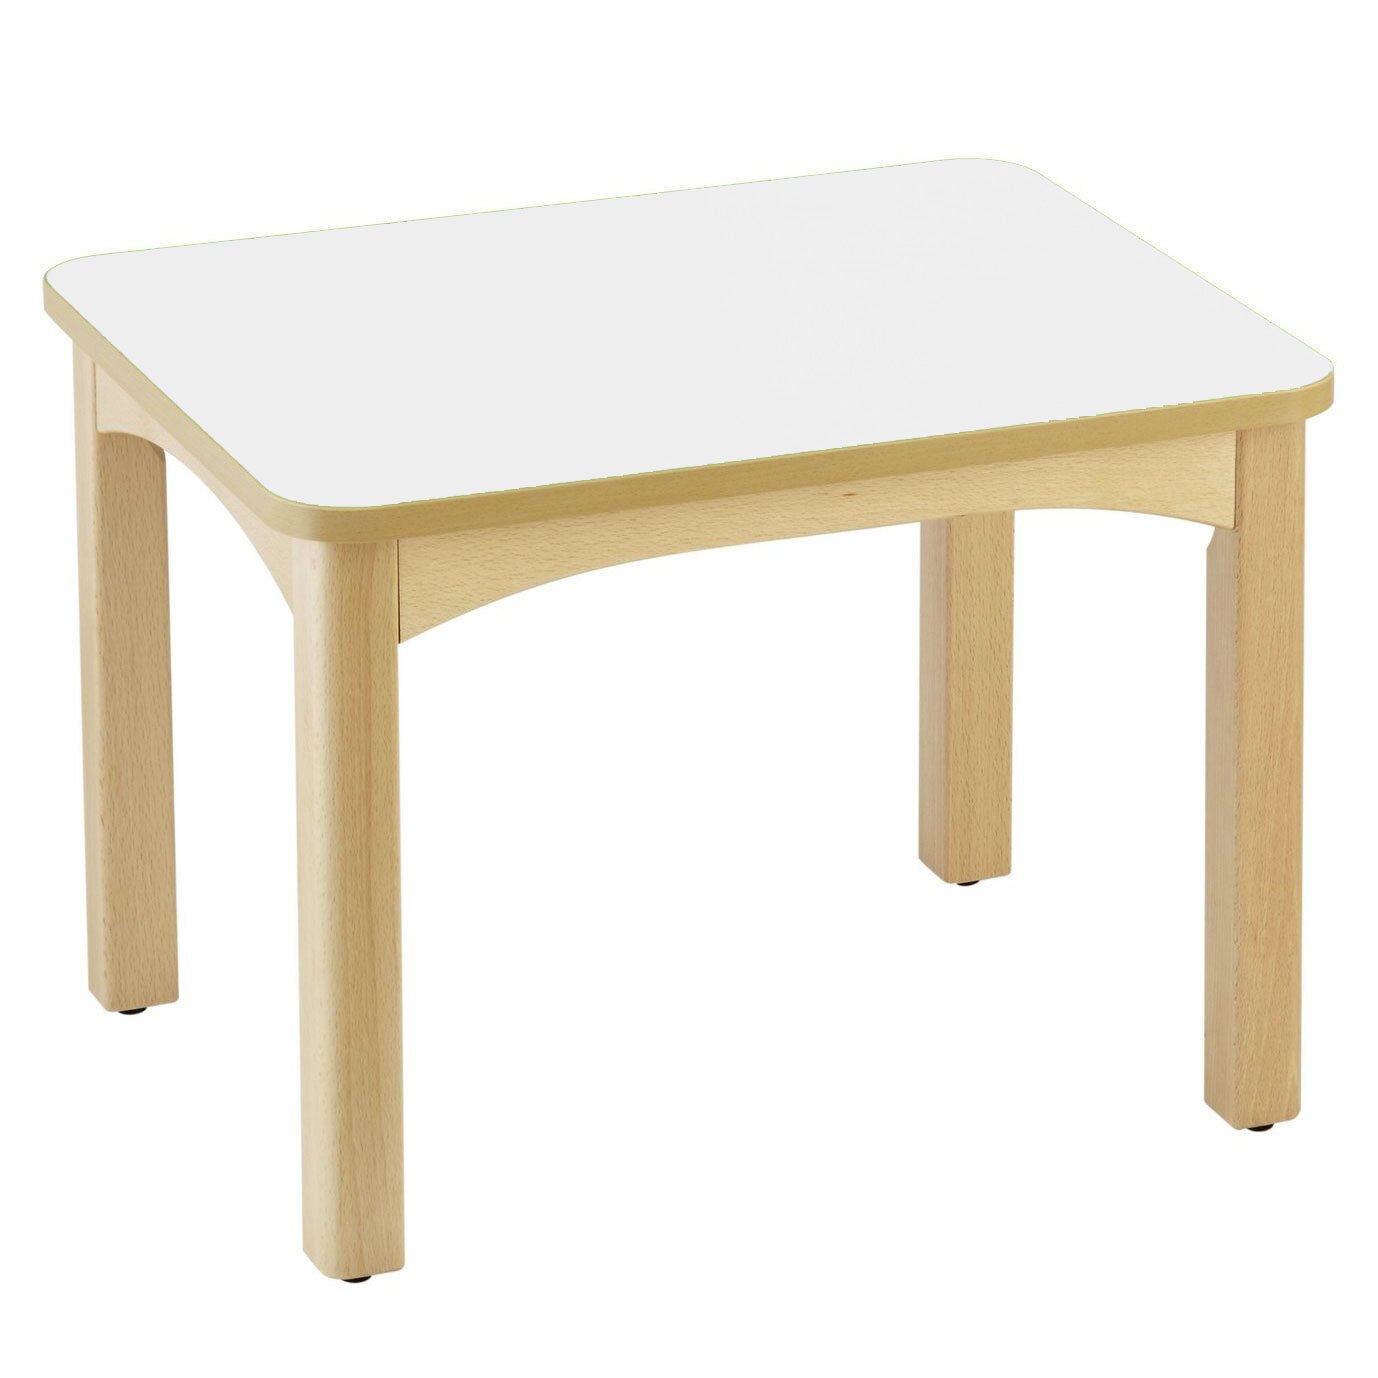 Table en bois pour crèche 60 x 50 cm t0 blanc